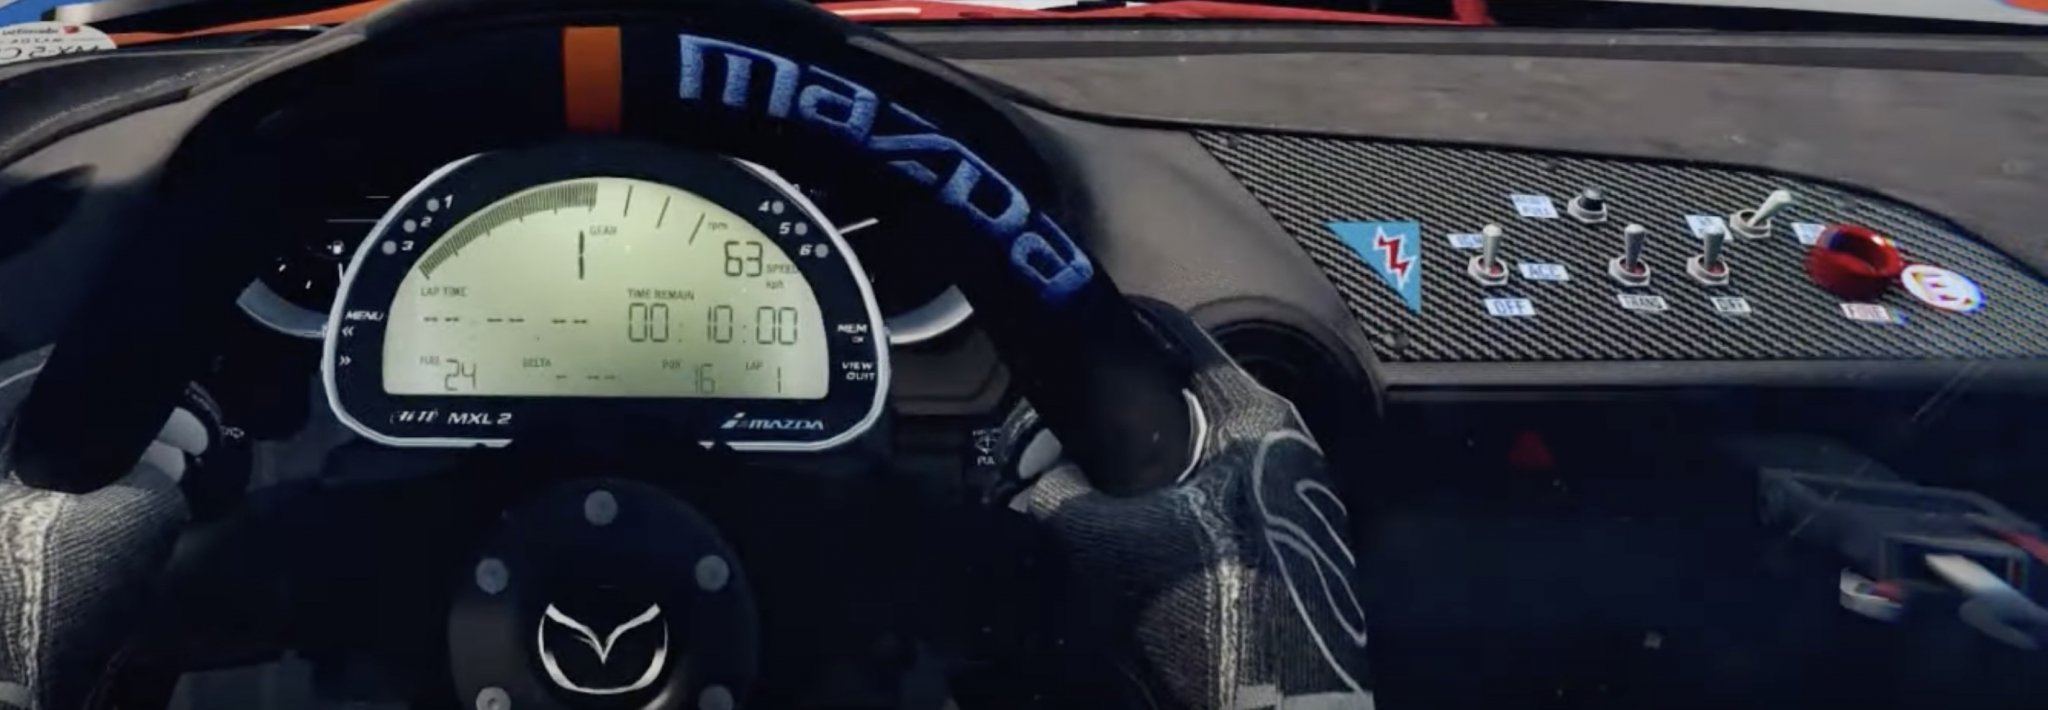 RaceRoom MX-5 Cockpit detail.jpg